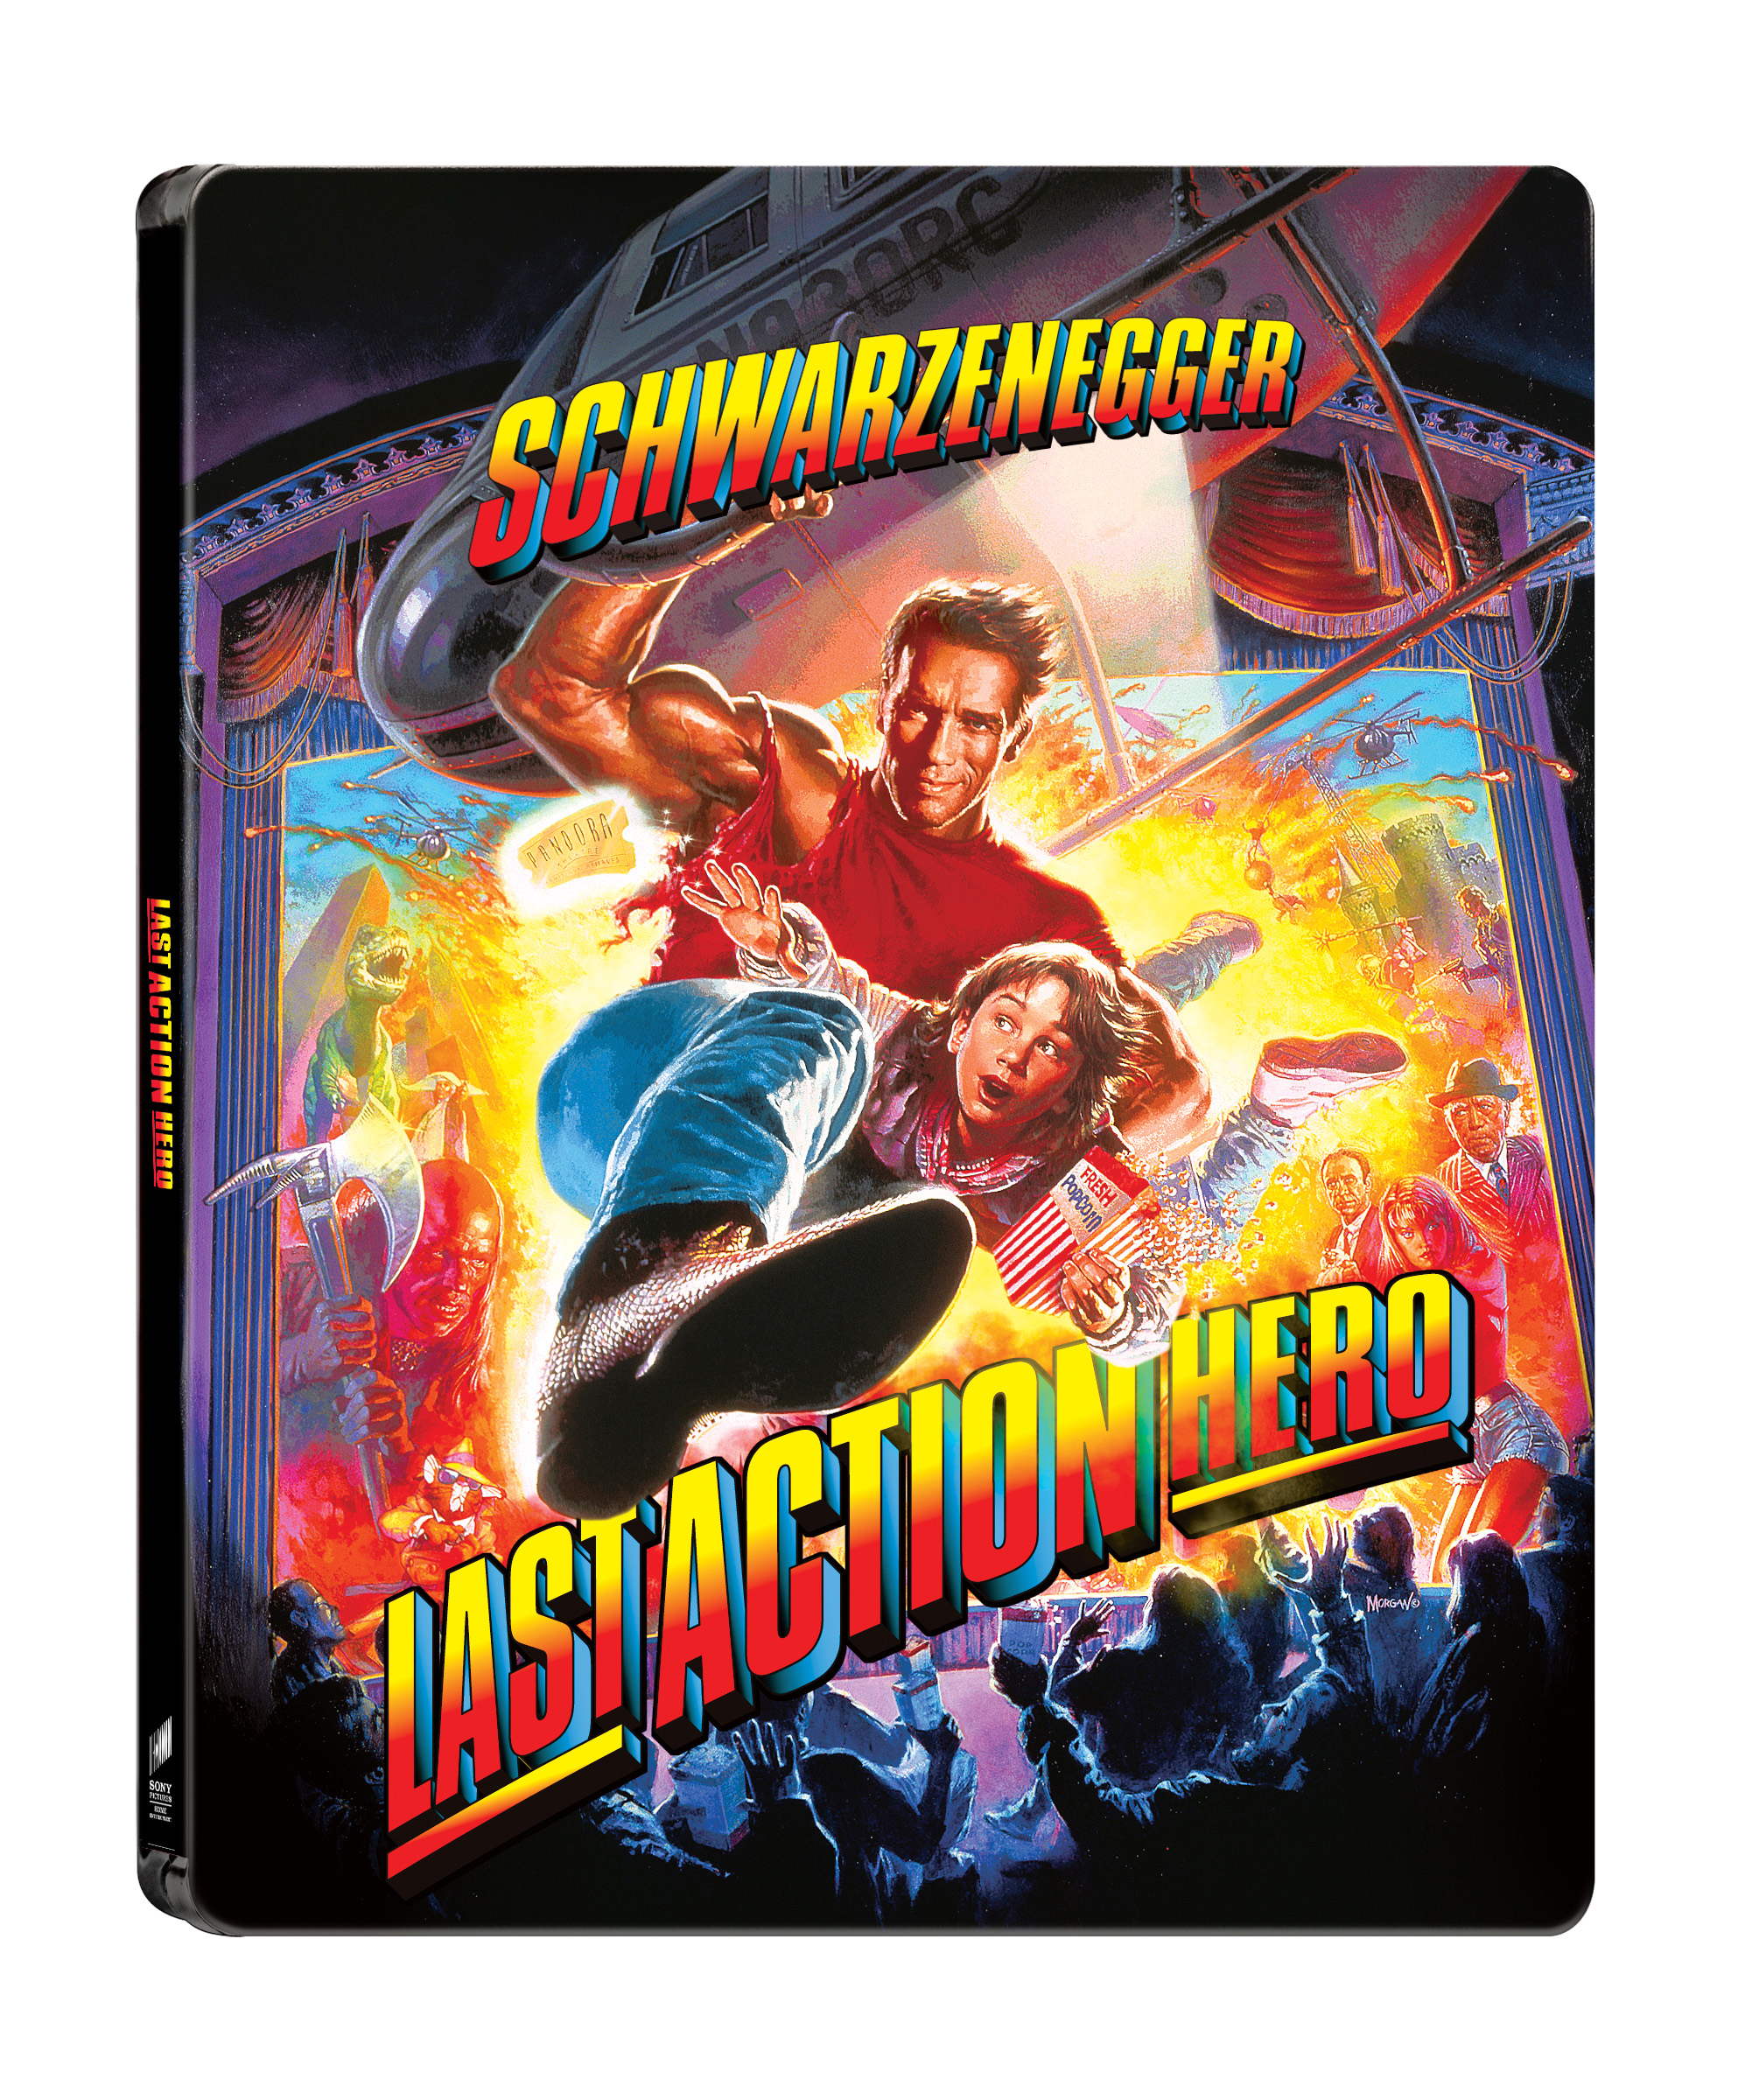 [Blu-ray] Last Action Hero 4K(2Disc: 4K UHD + BD) Steelbook LE